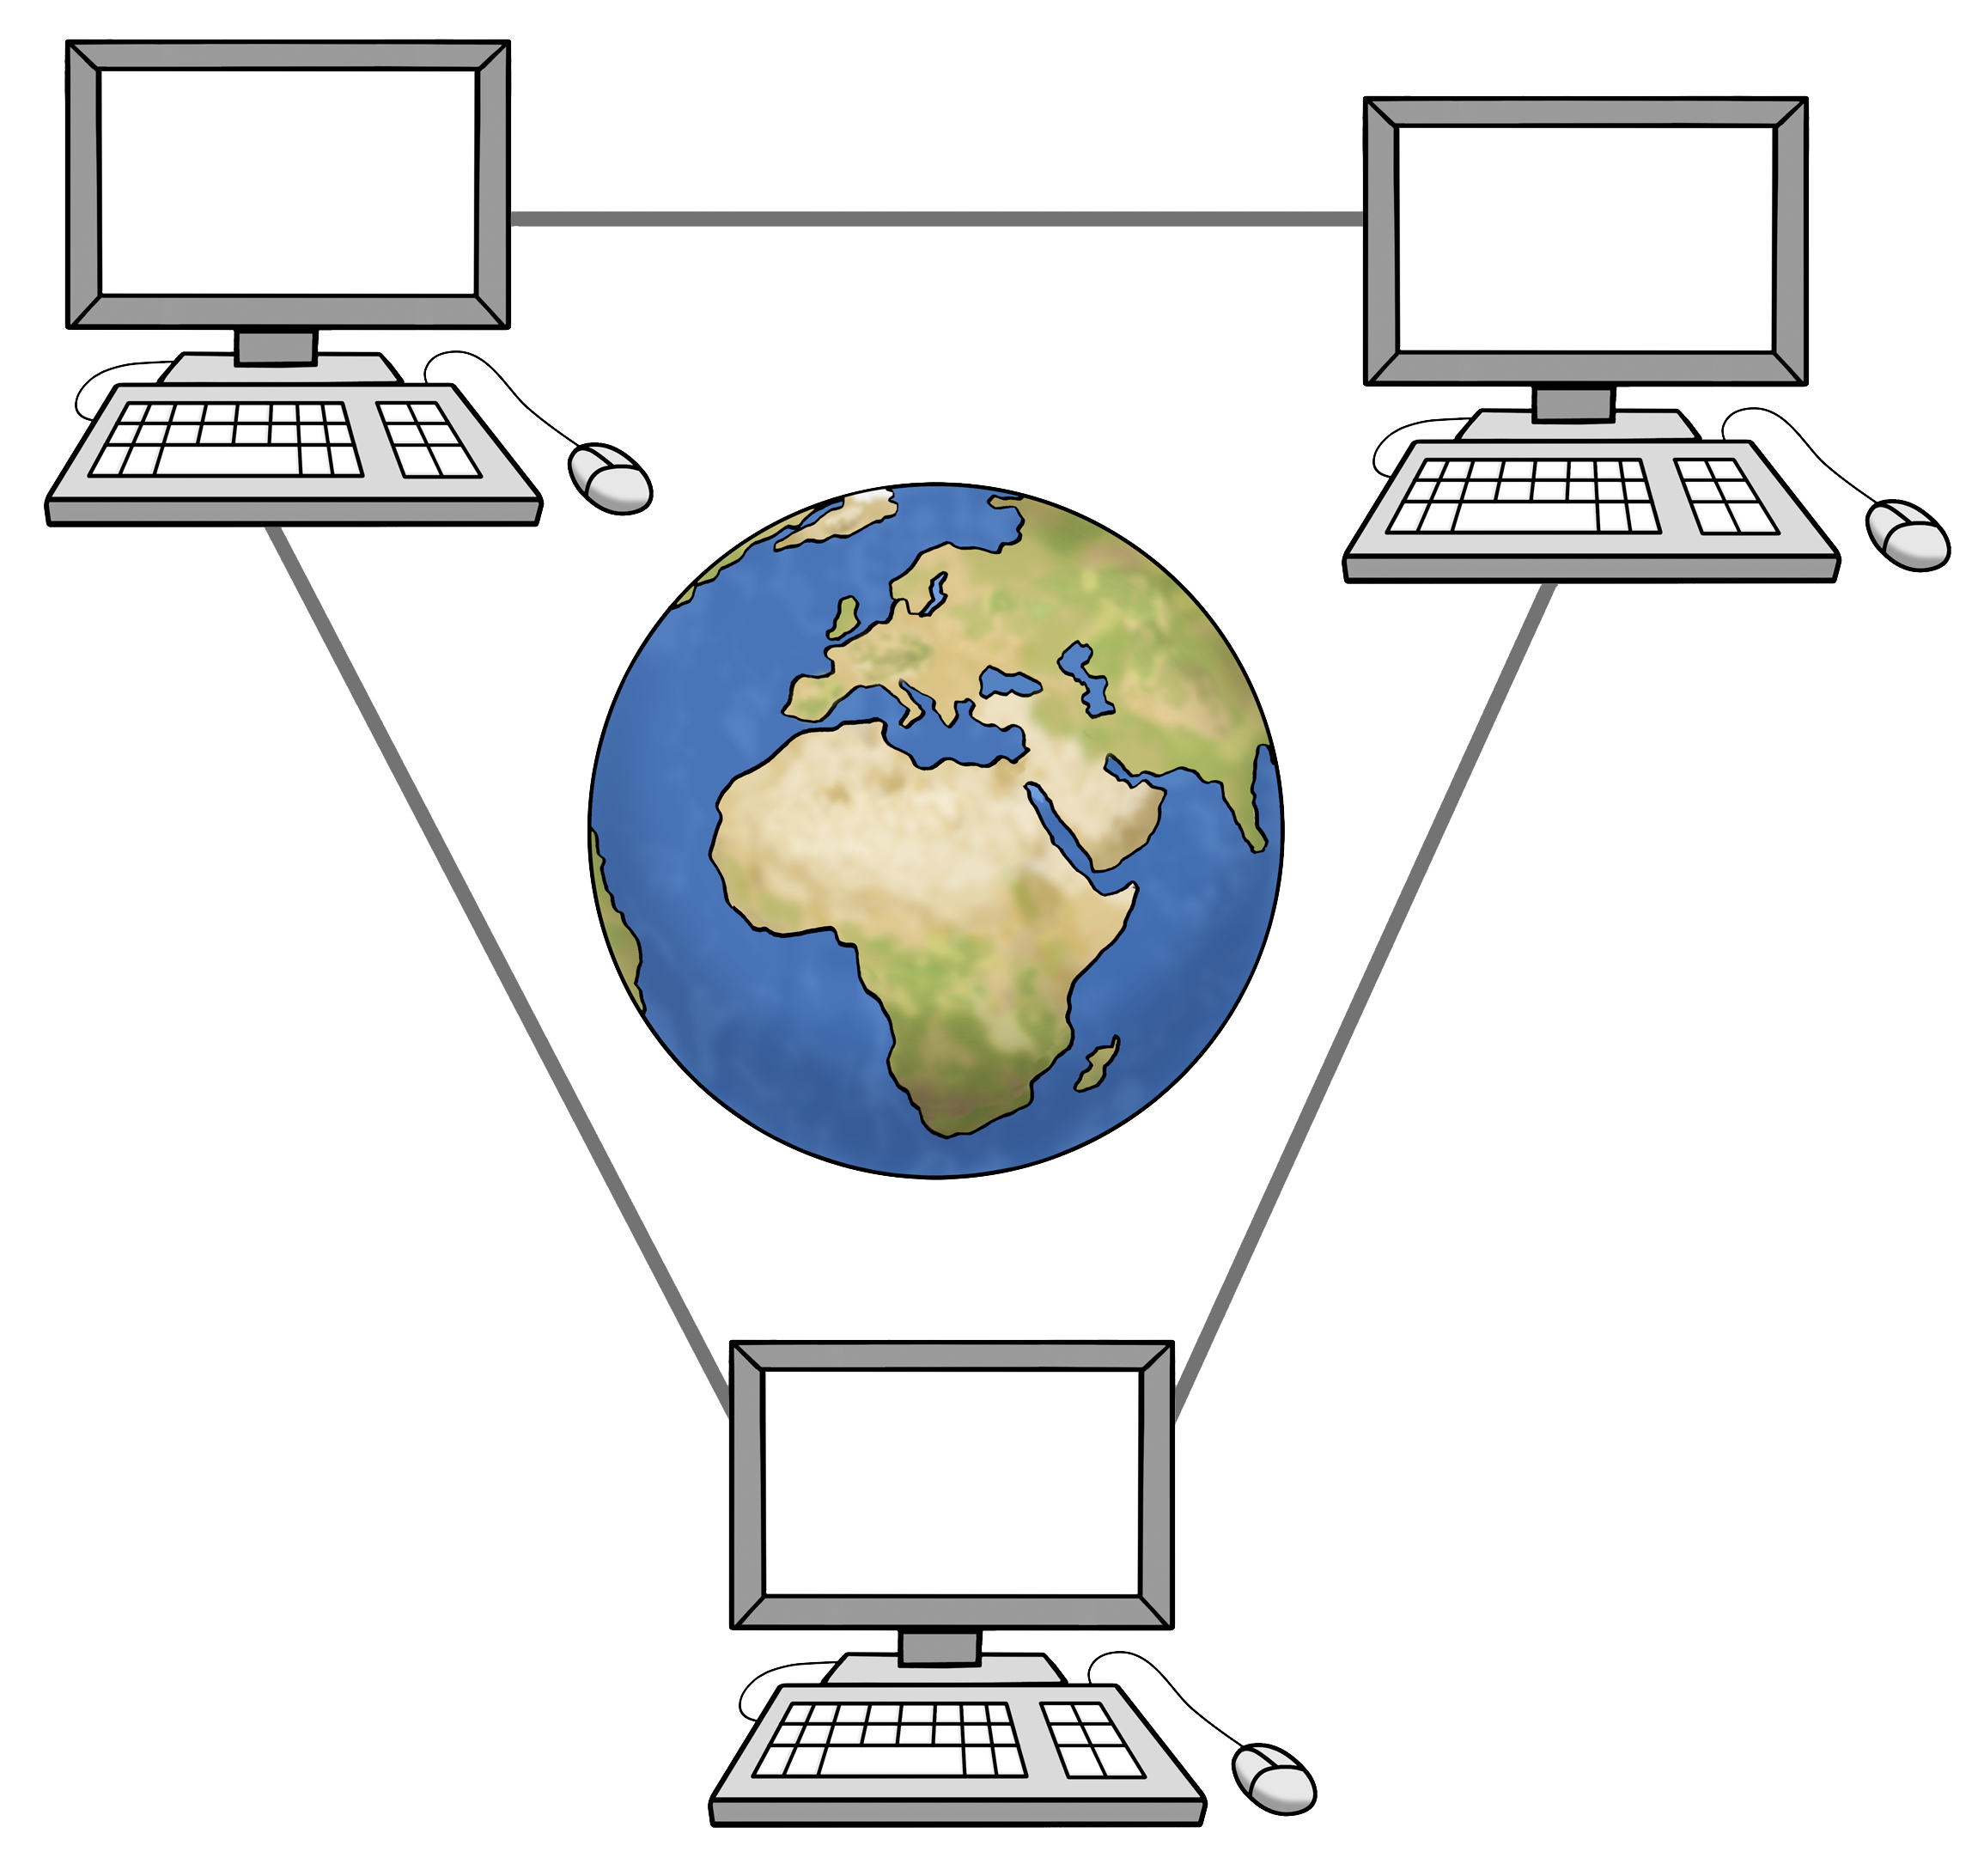 Leichte Sprache Bild: Mehrere Computer sind zu einem Netzwerk zusammengeschlossen, in der Mitte eine Weltkugel